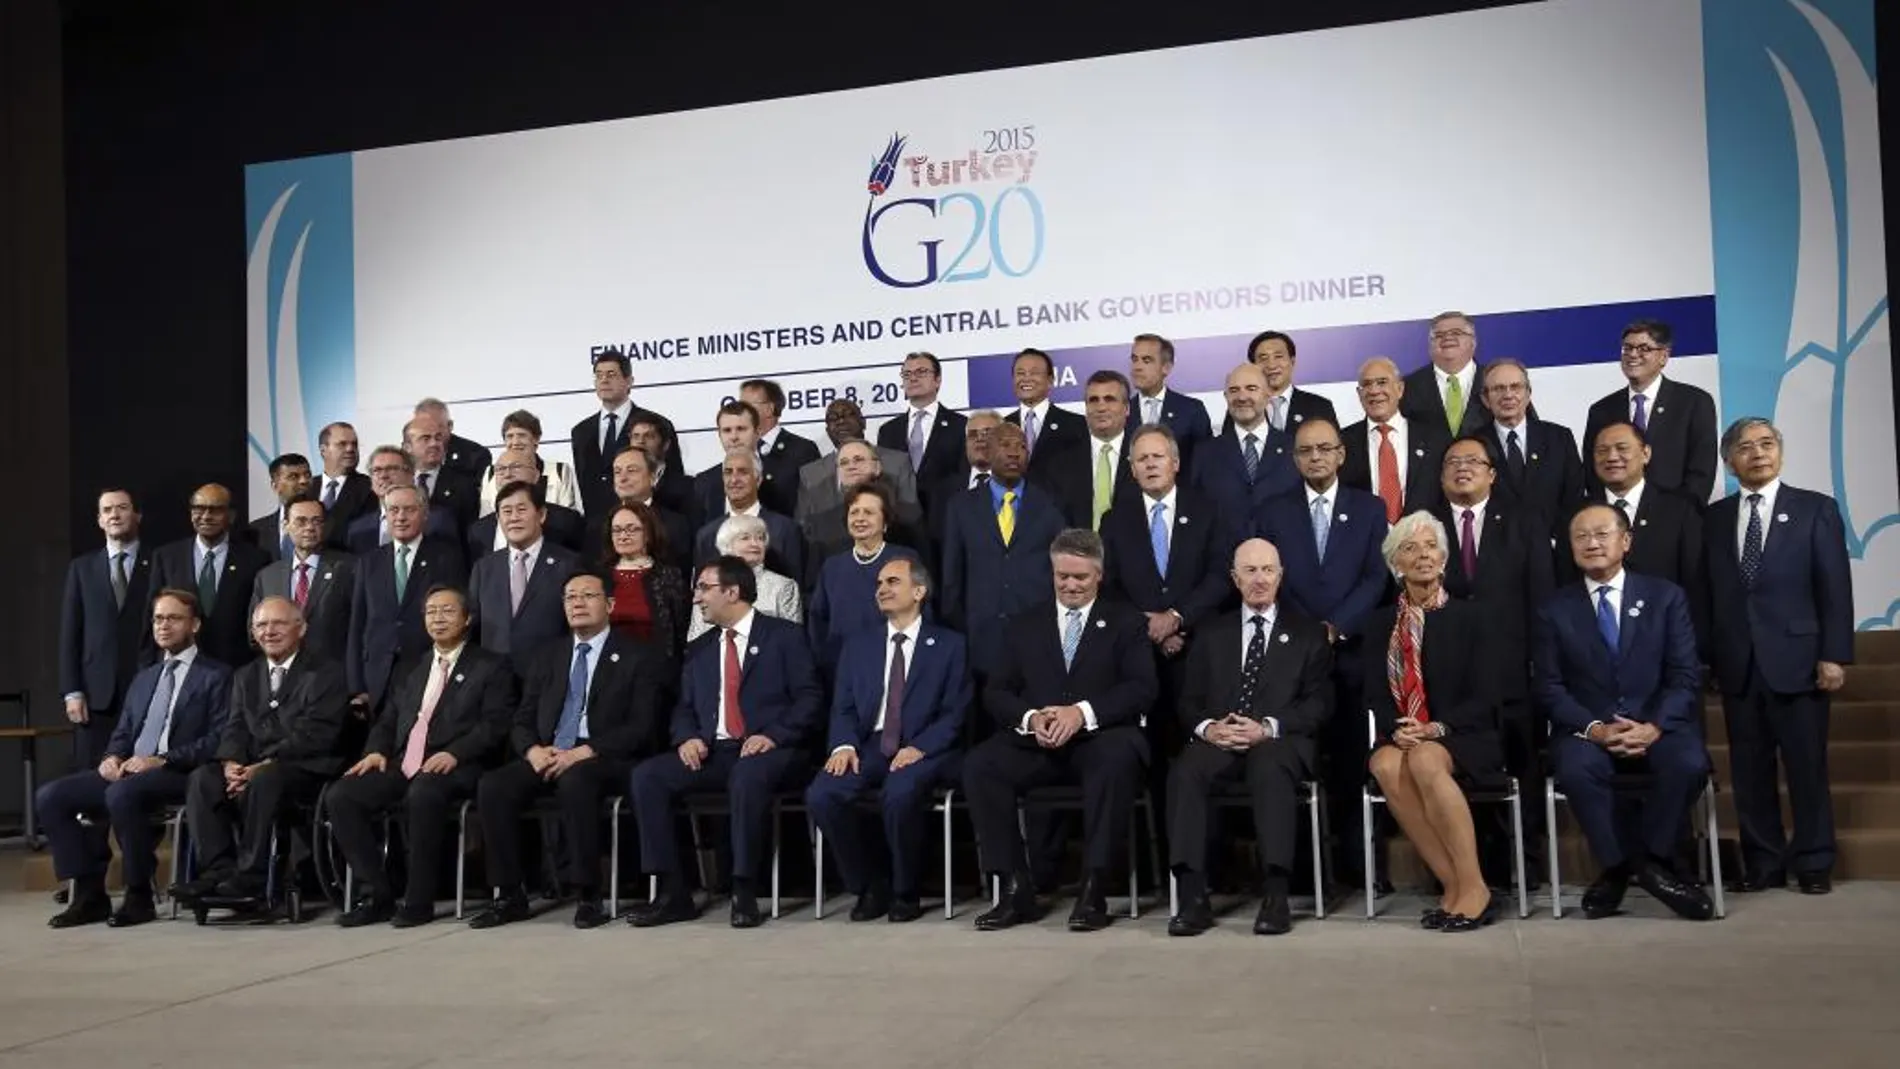 Representantes de los países miembros del G20 posan para la foto oficial del evento en el marco de las reuniones anuales del FMI y BM